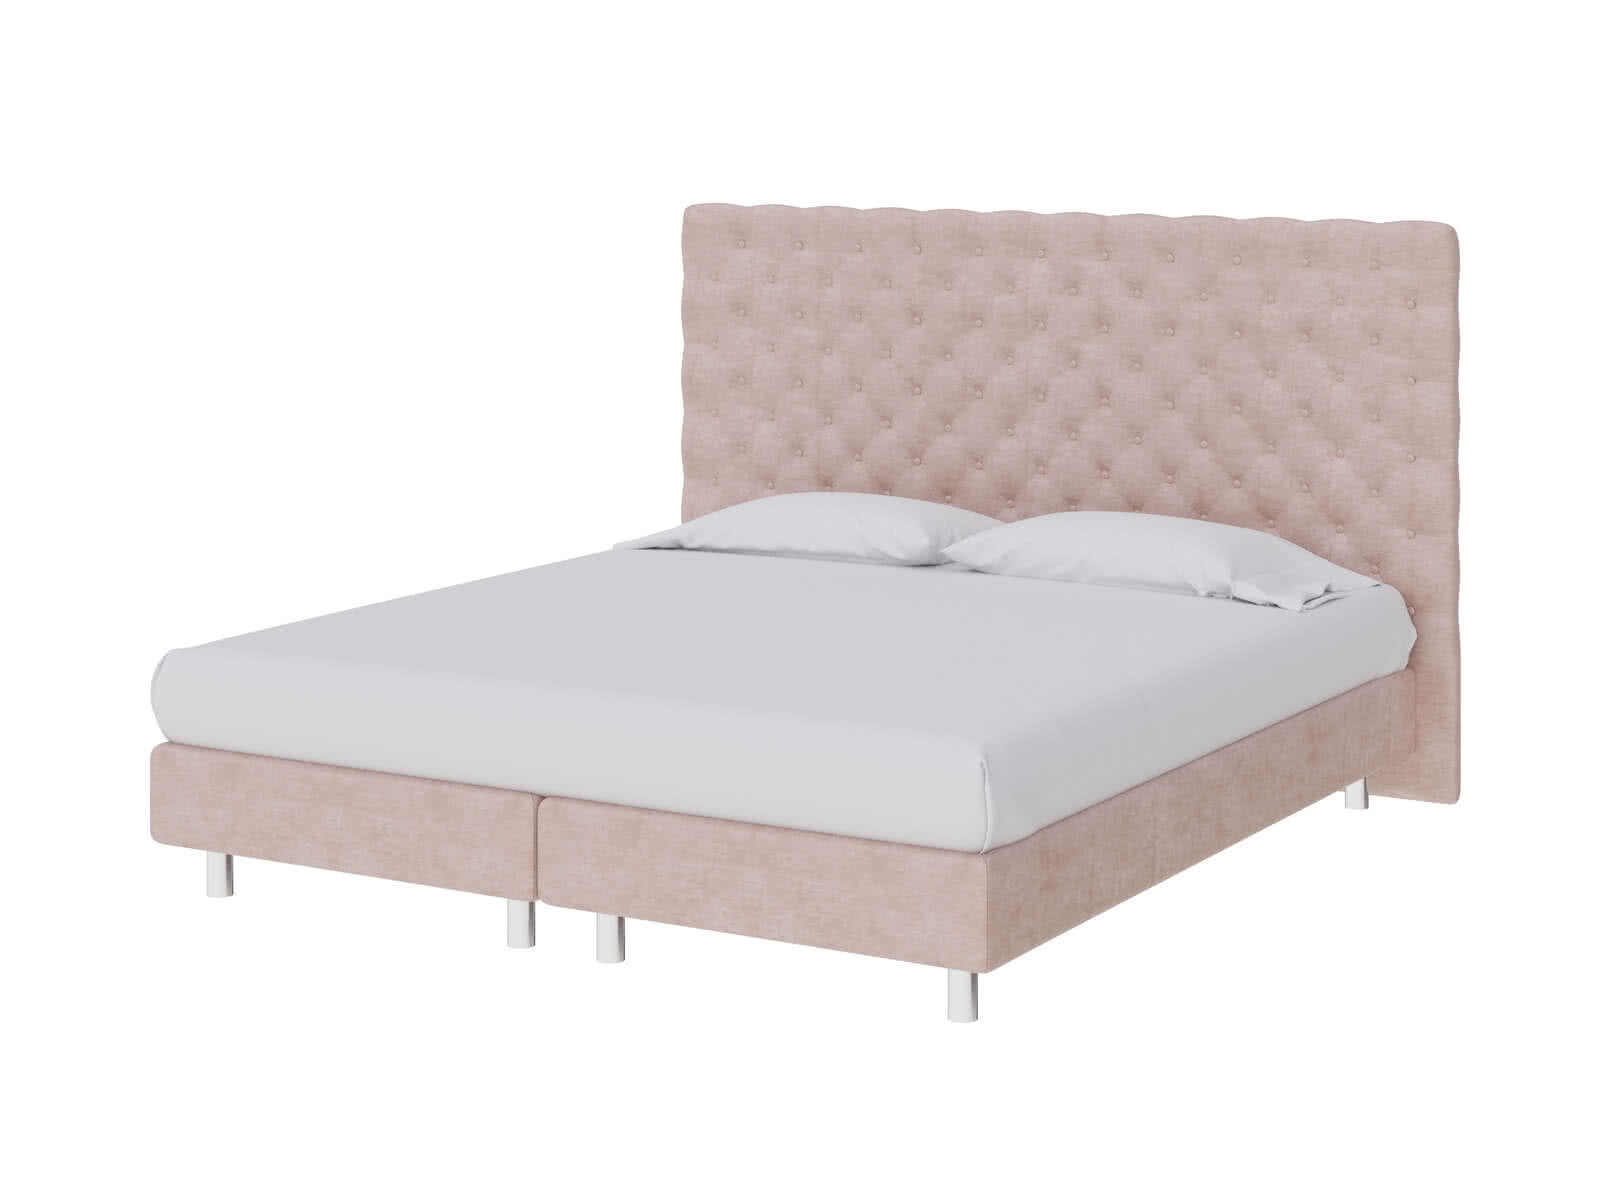 Кровать ProSon Europe Paris Elite Лофти Тауп от производителя — цены фабрики, доставка